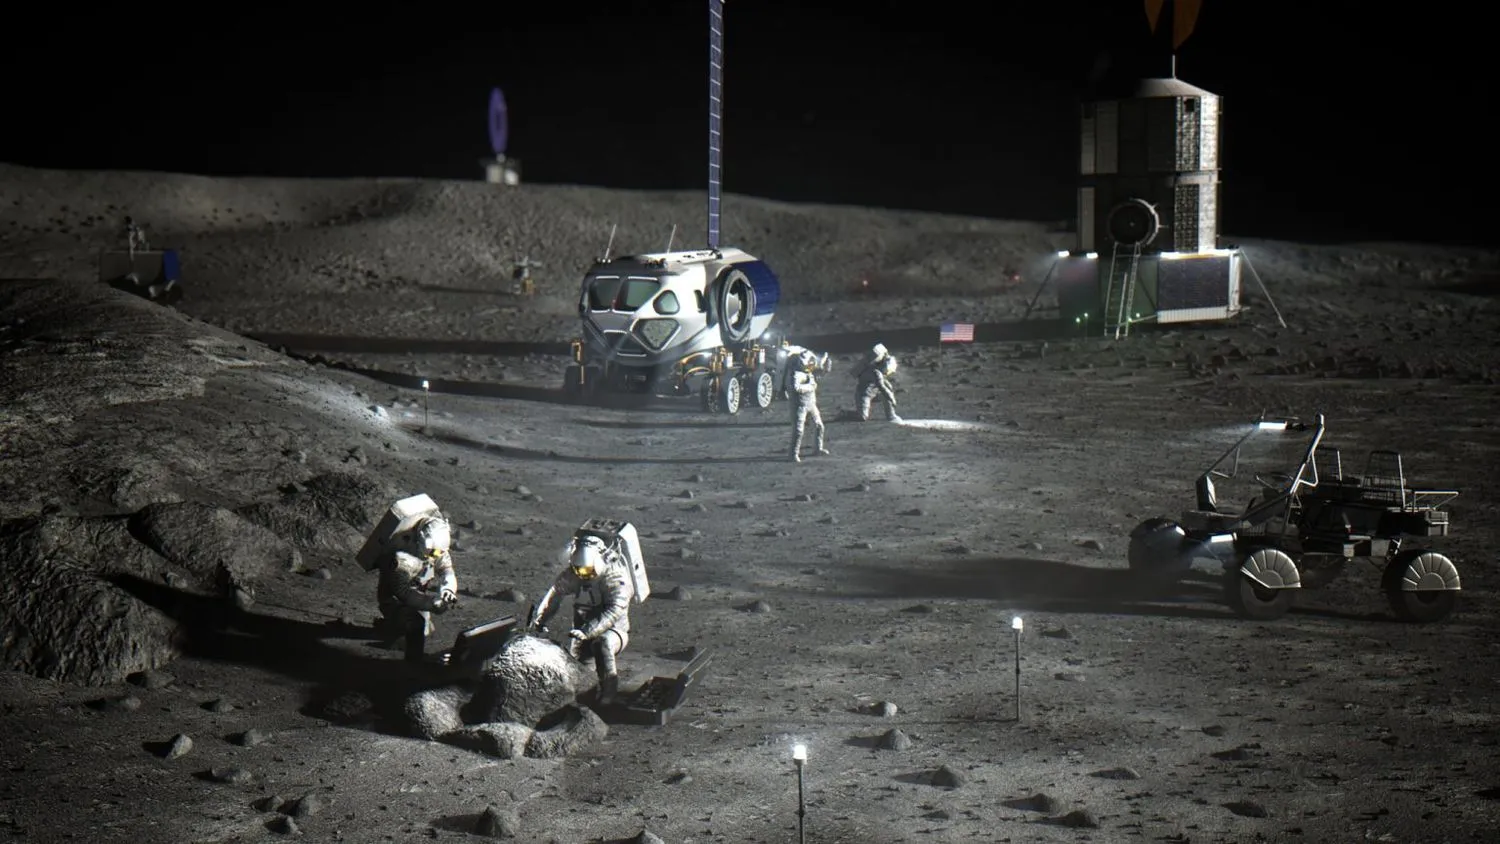 Illustration von NASA-Astronauten bei der Arbeit auf dem Mond, mit zwei Rovern und einer Landefähre im Hintergrund.